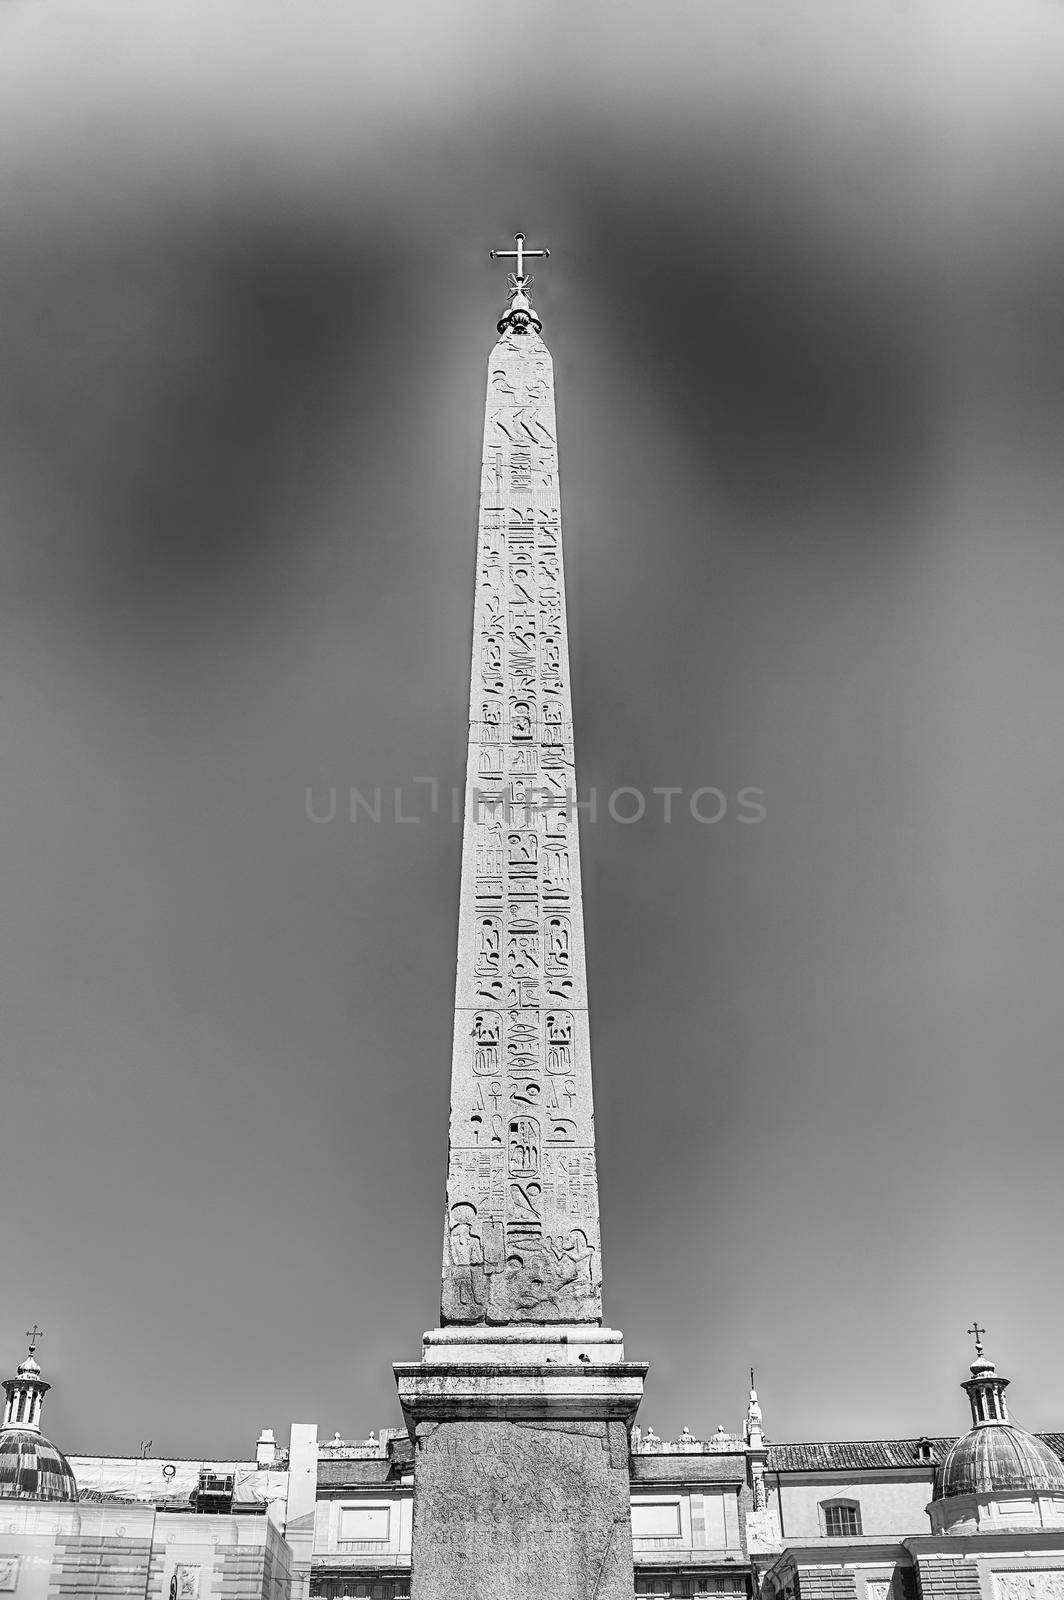 Egyptian obelisk in Piazza del Popolo, Rome, Italy by marcorubino